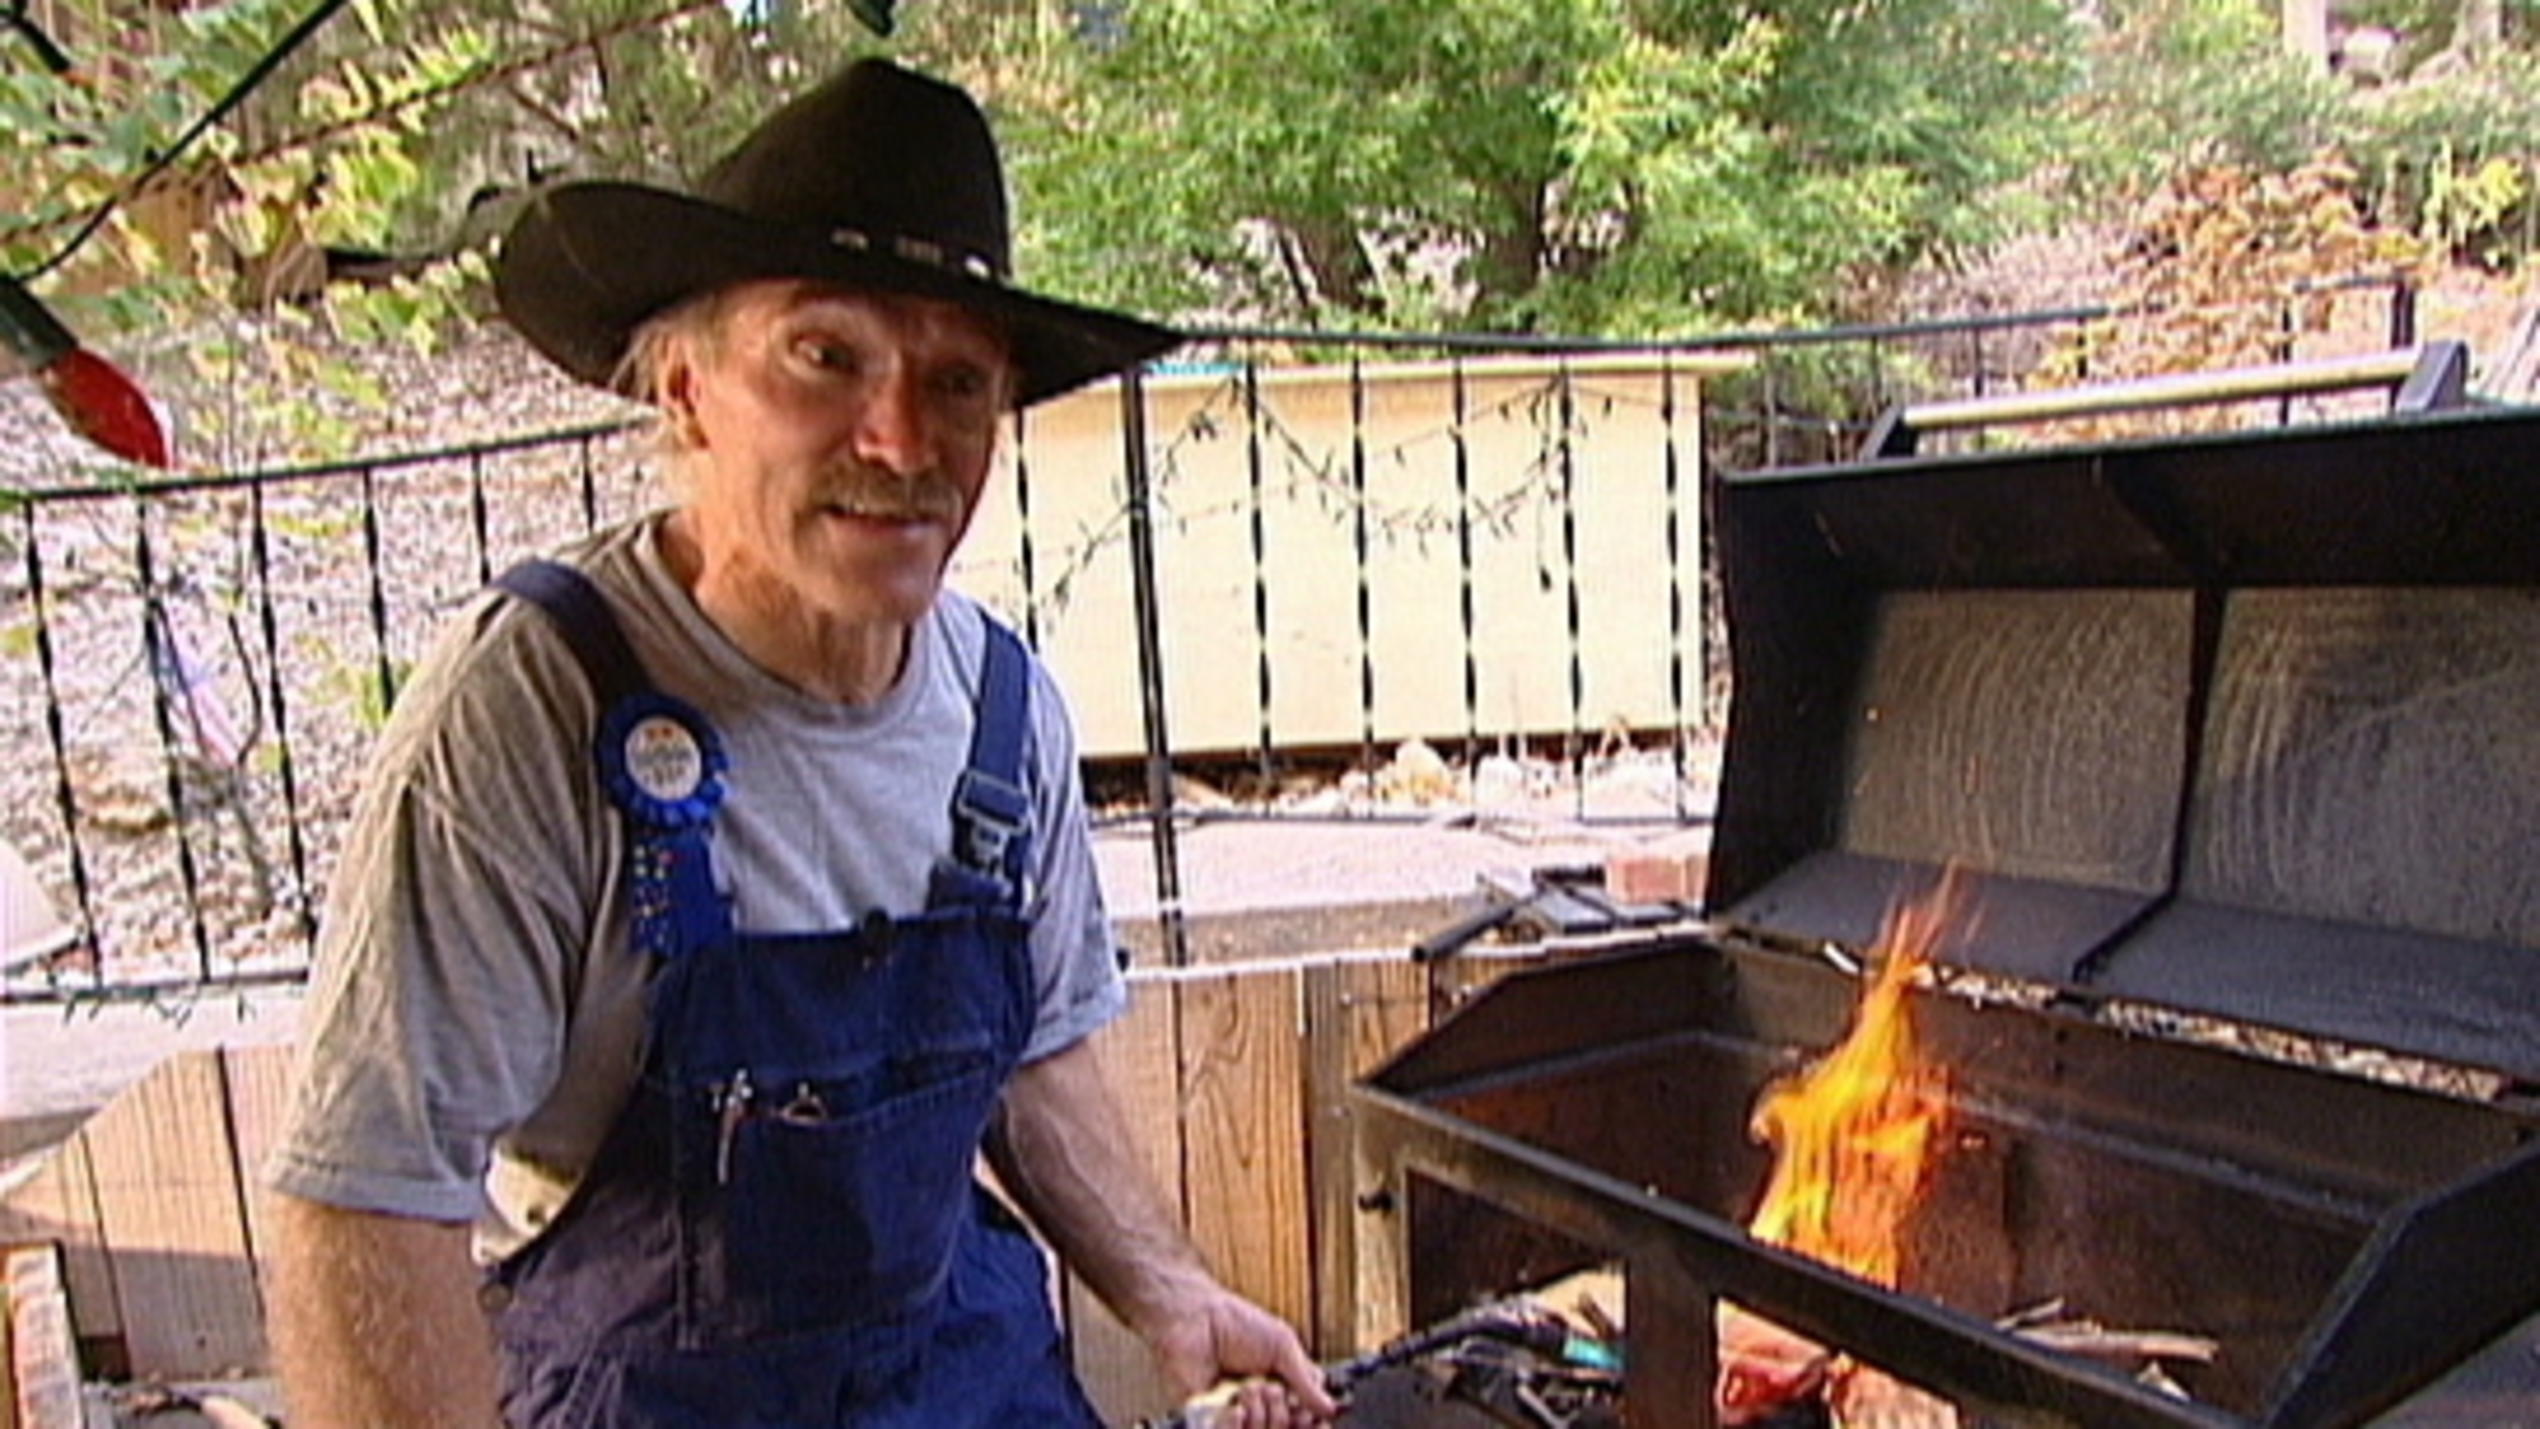 Barbecueparty bei Grillspezialist Konny Reimann